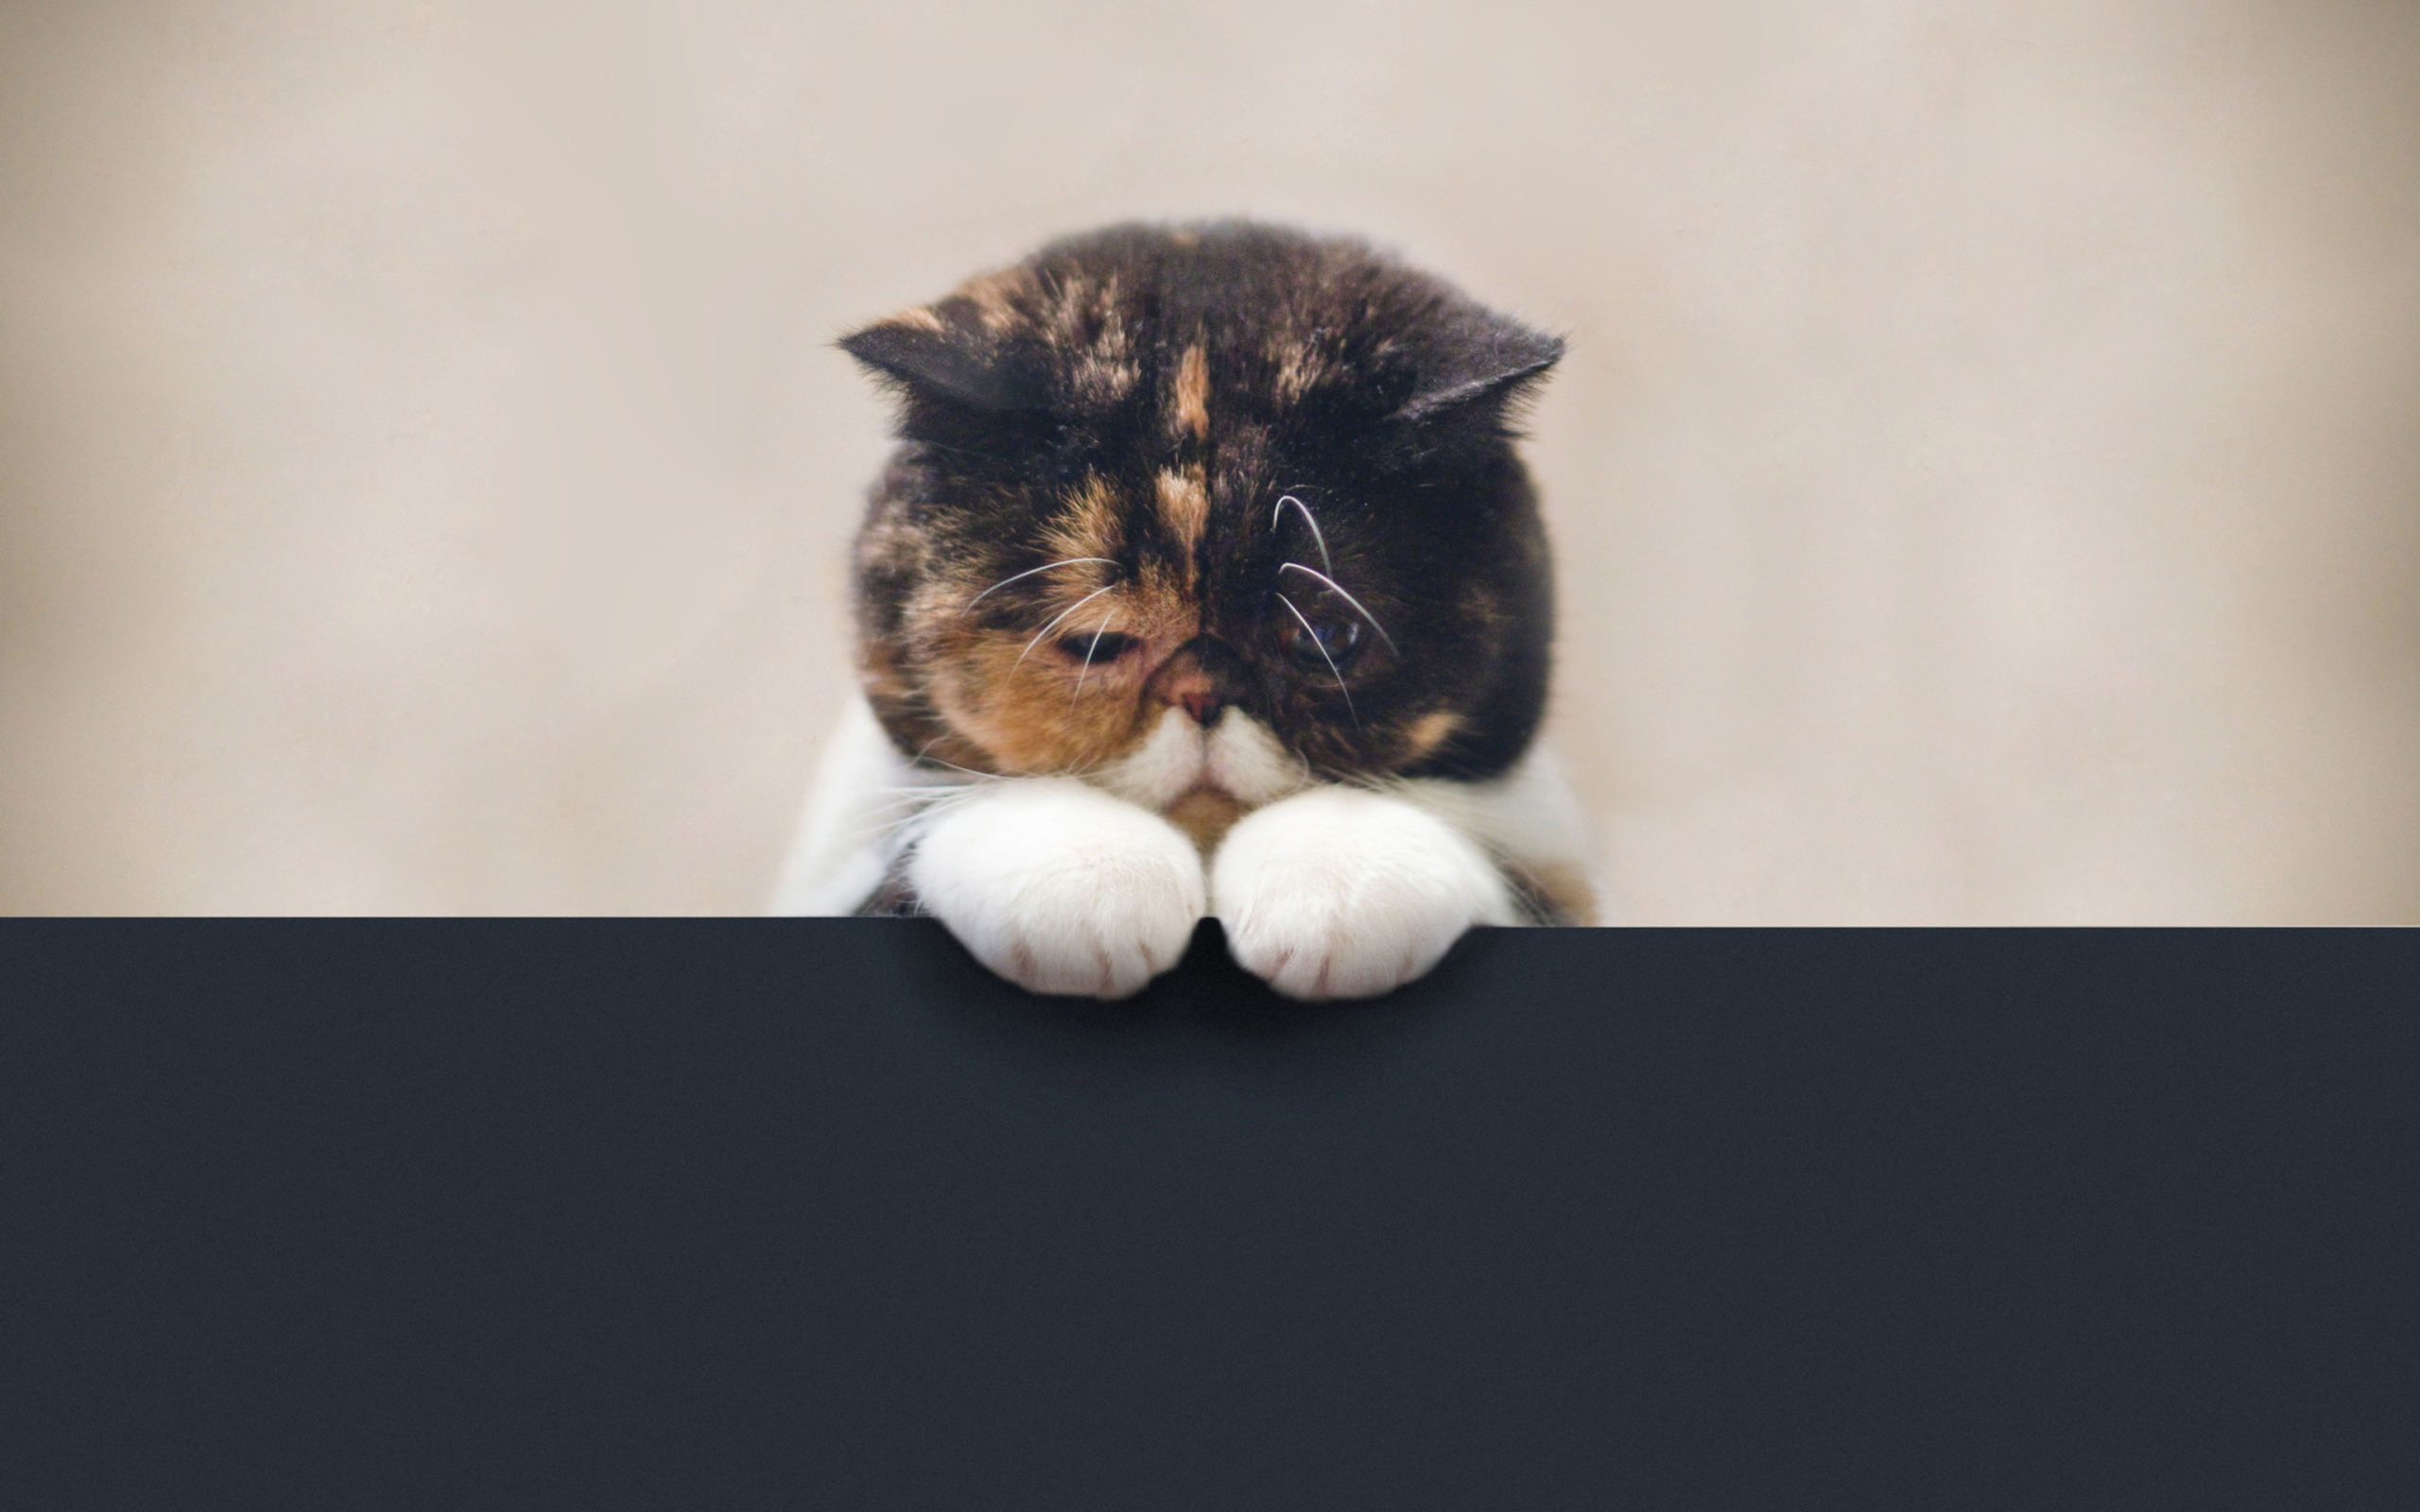 Sad Cat wallpaper 2560x1600